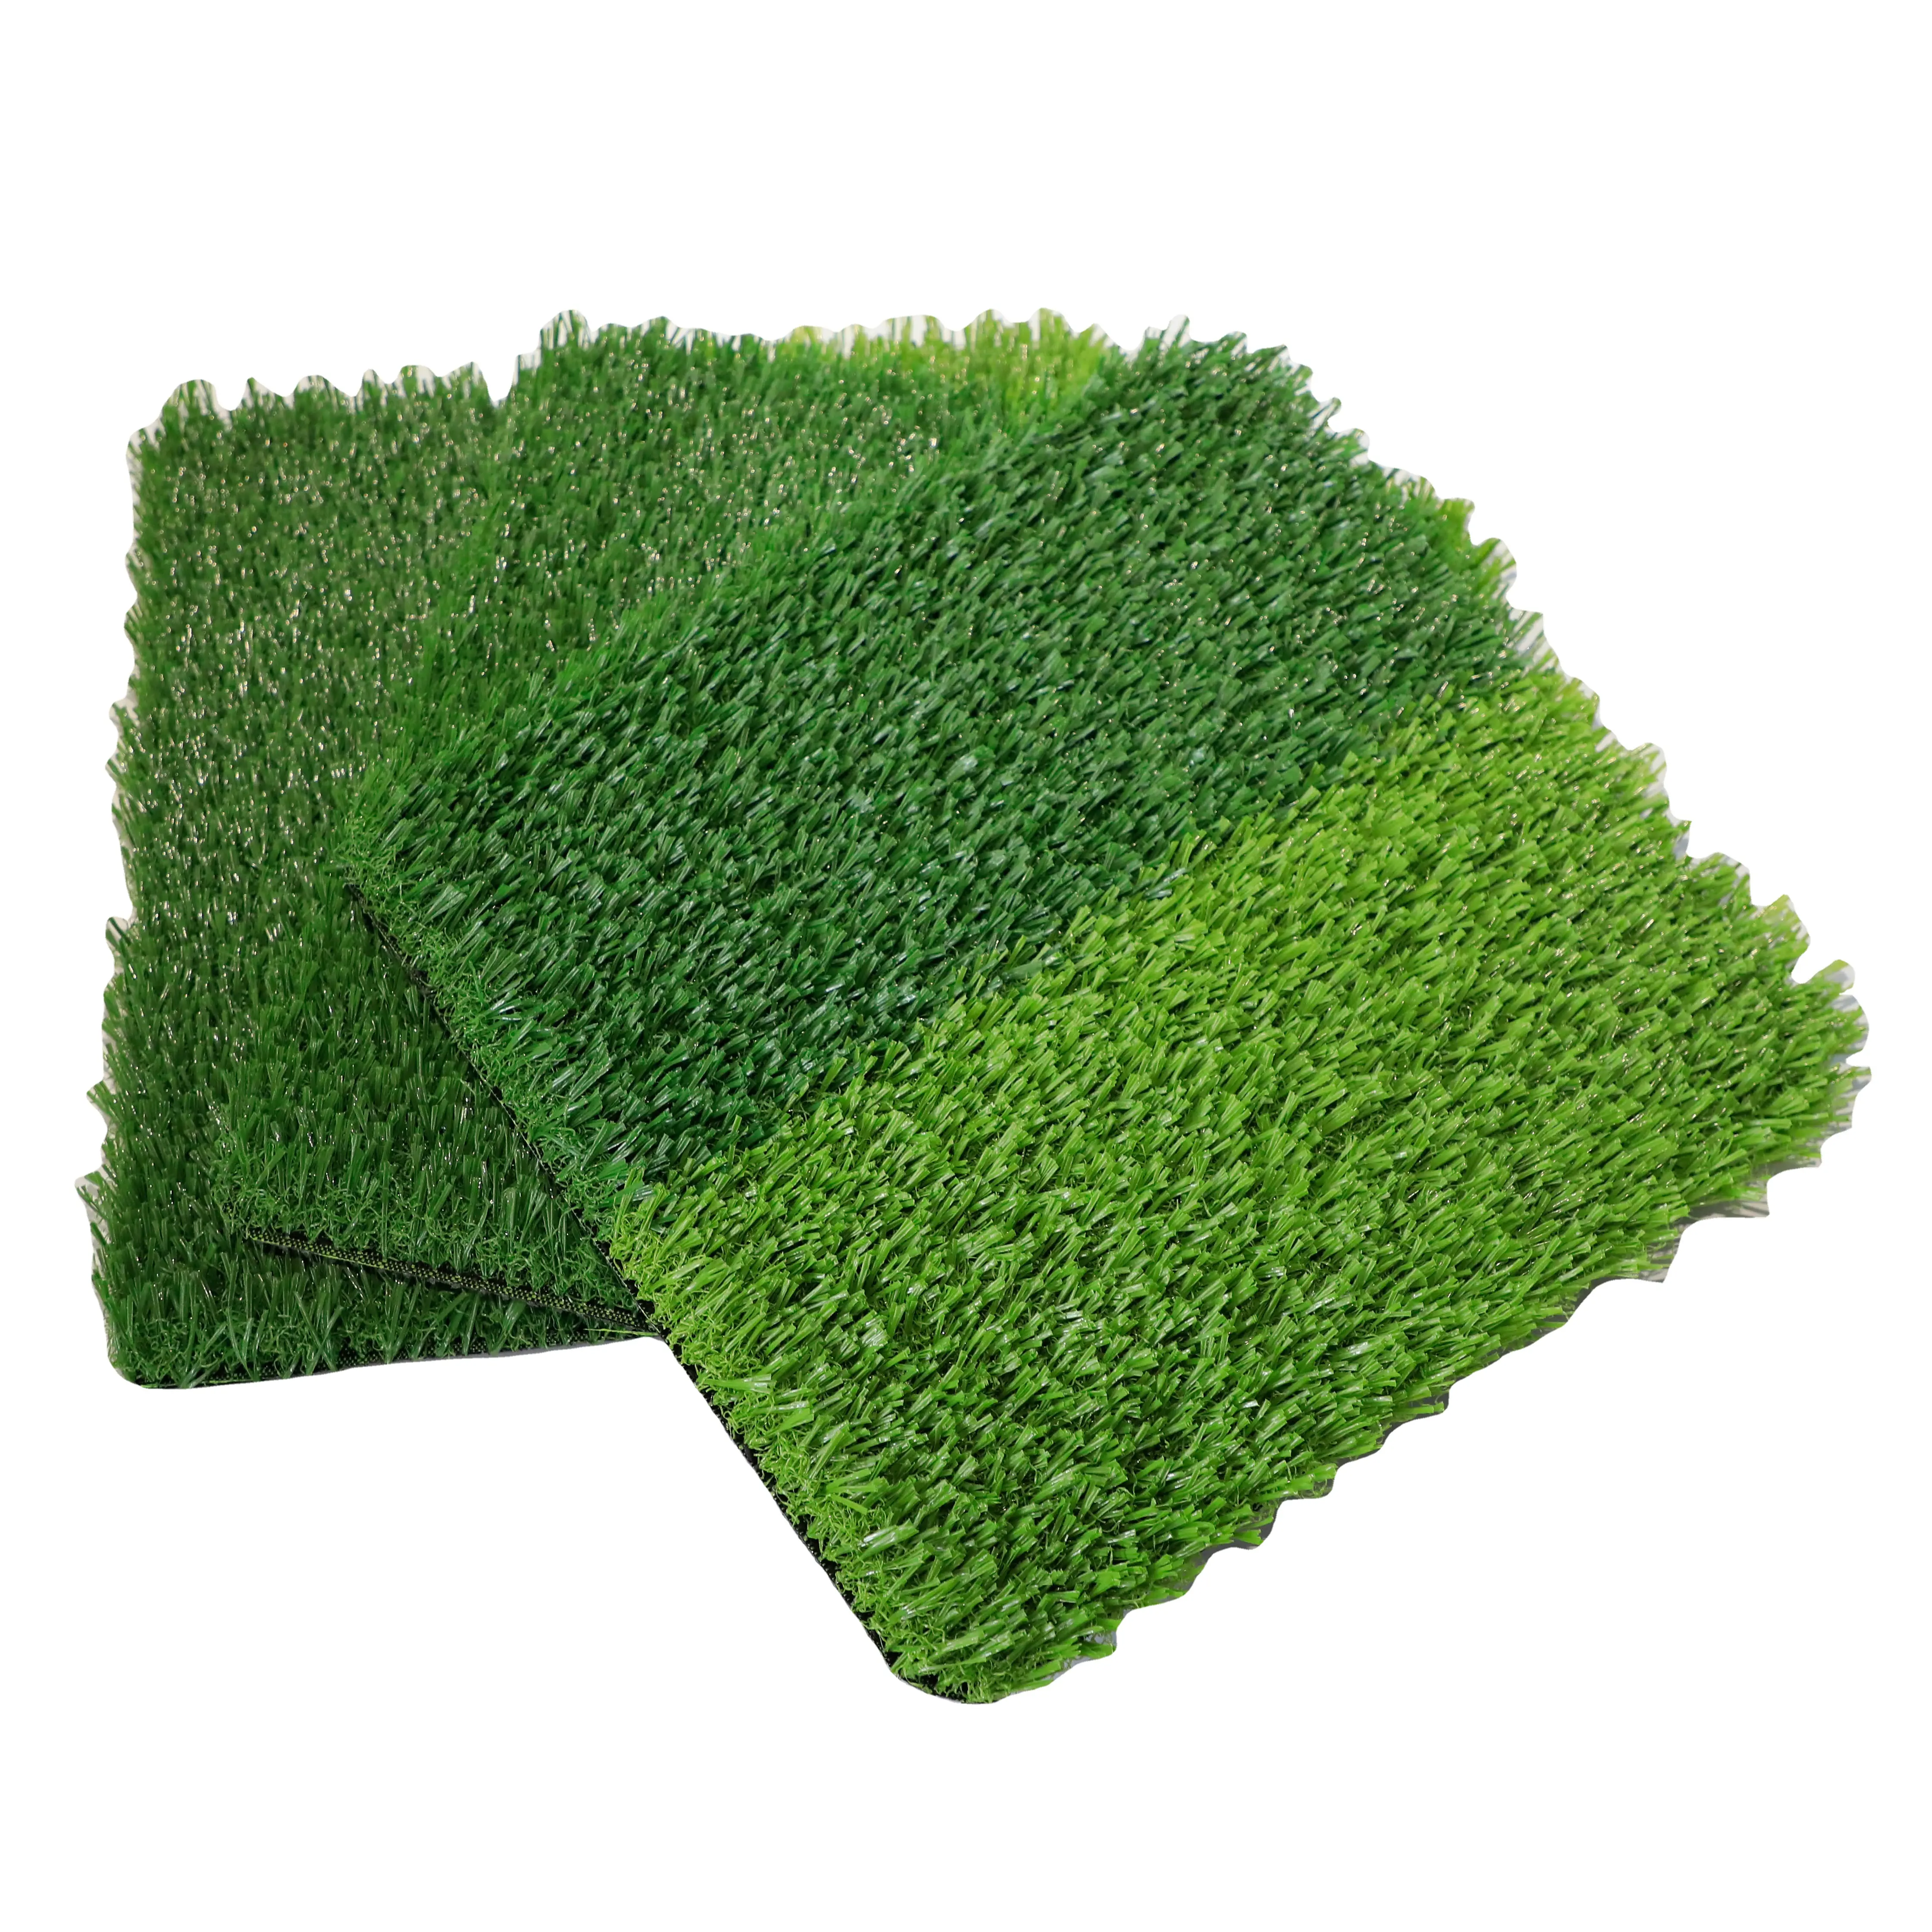 Cheap Price 30mm Grass Football Lawn Landscaping Green Artificial Unfilled Artificial Grass Sports Flooring